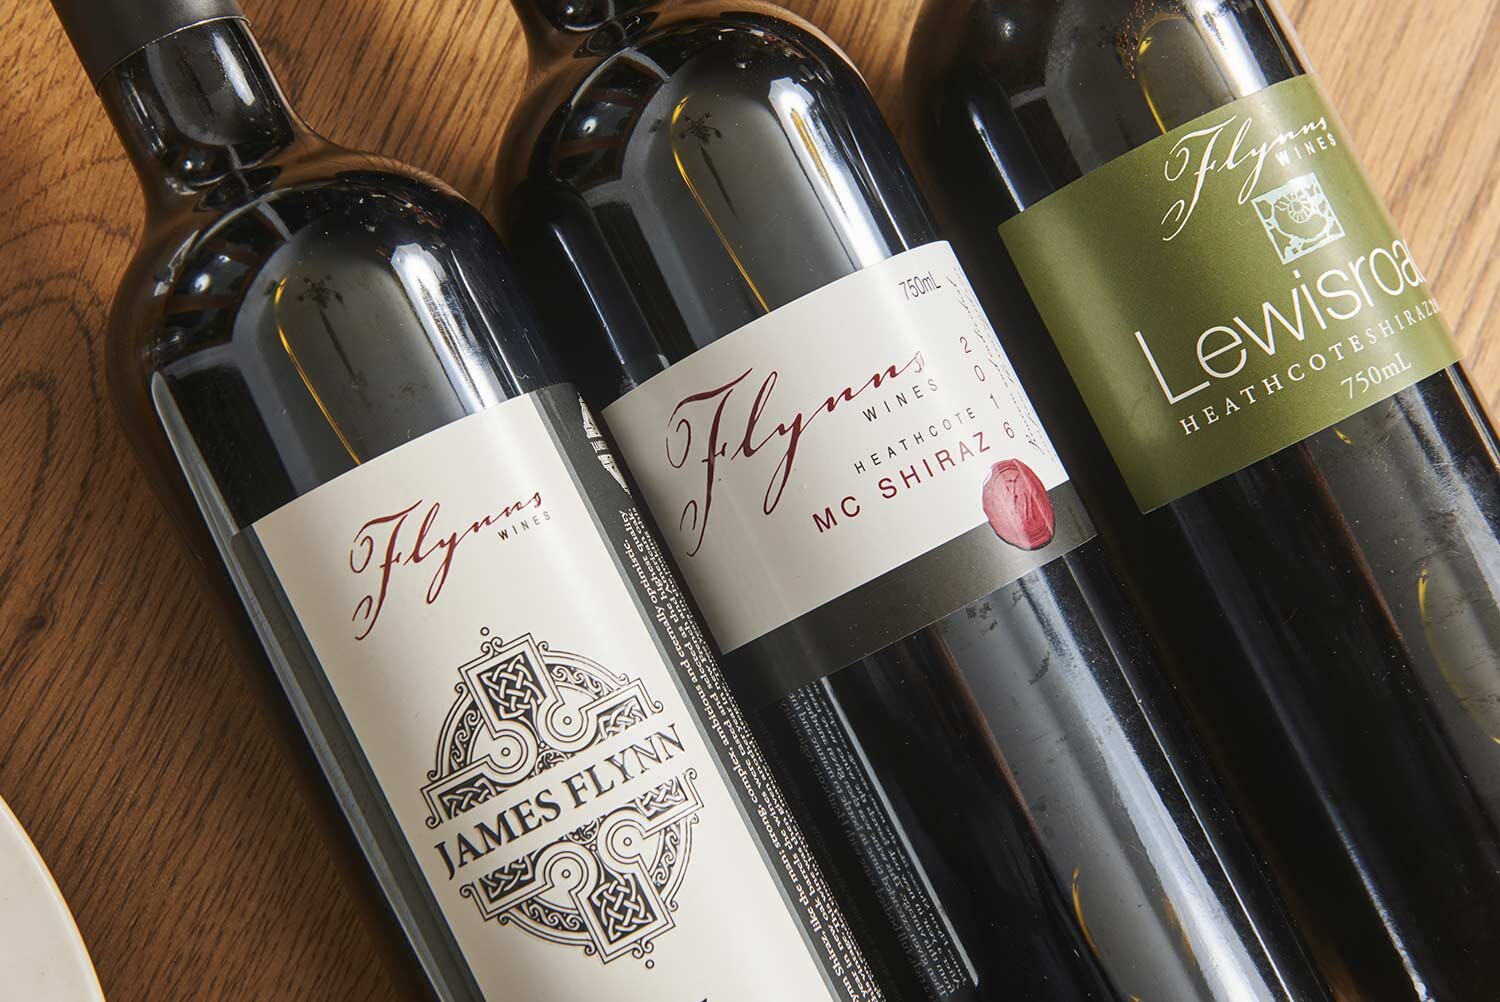 flynns-wines-bottles.jpg